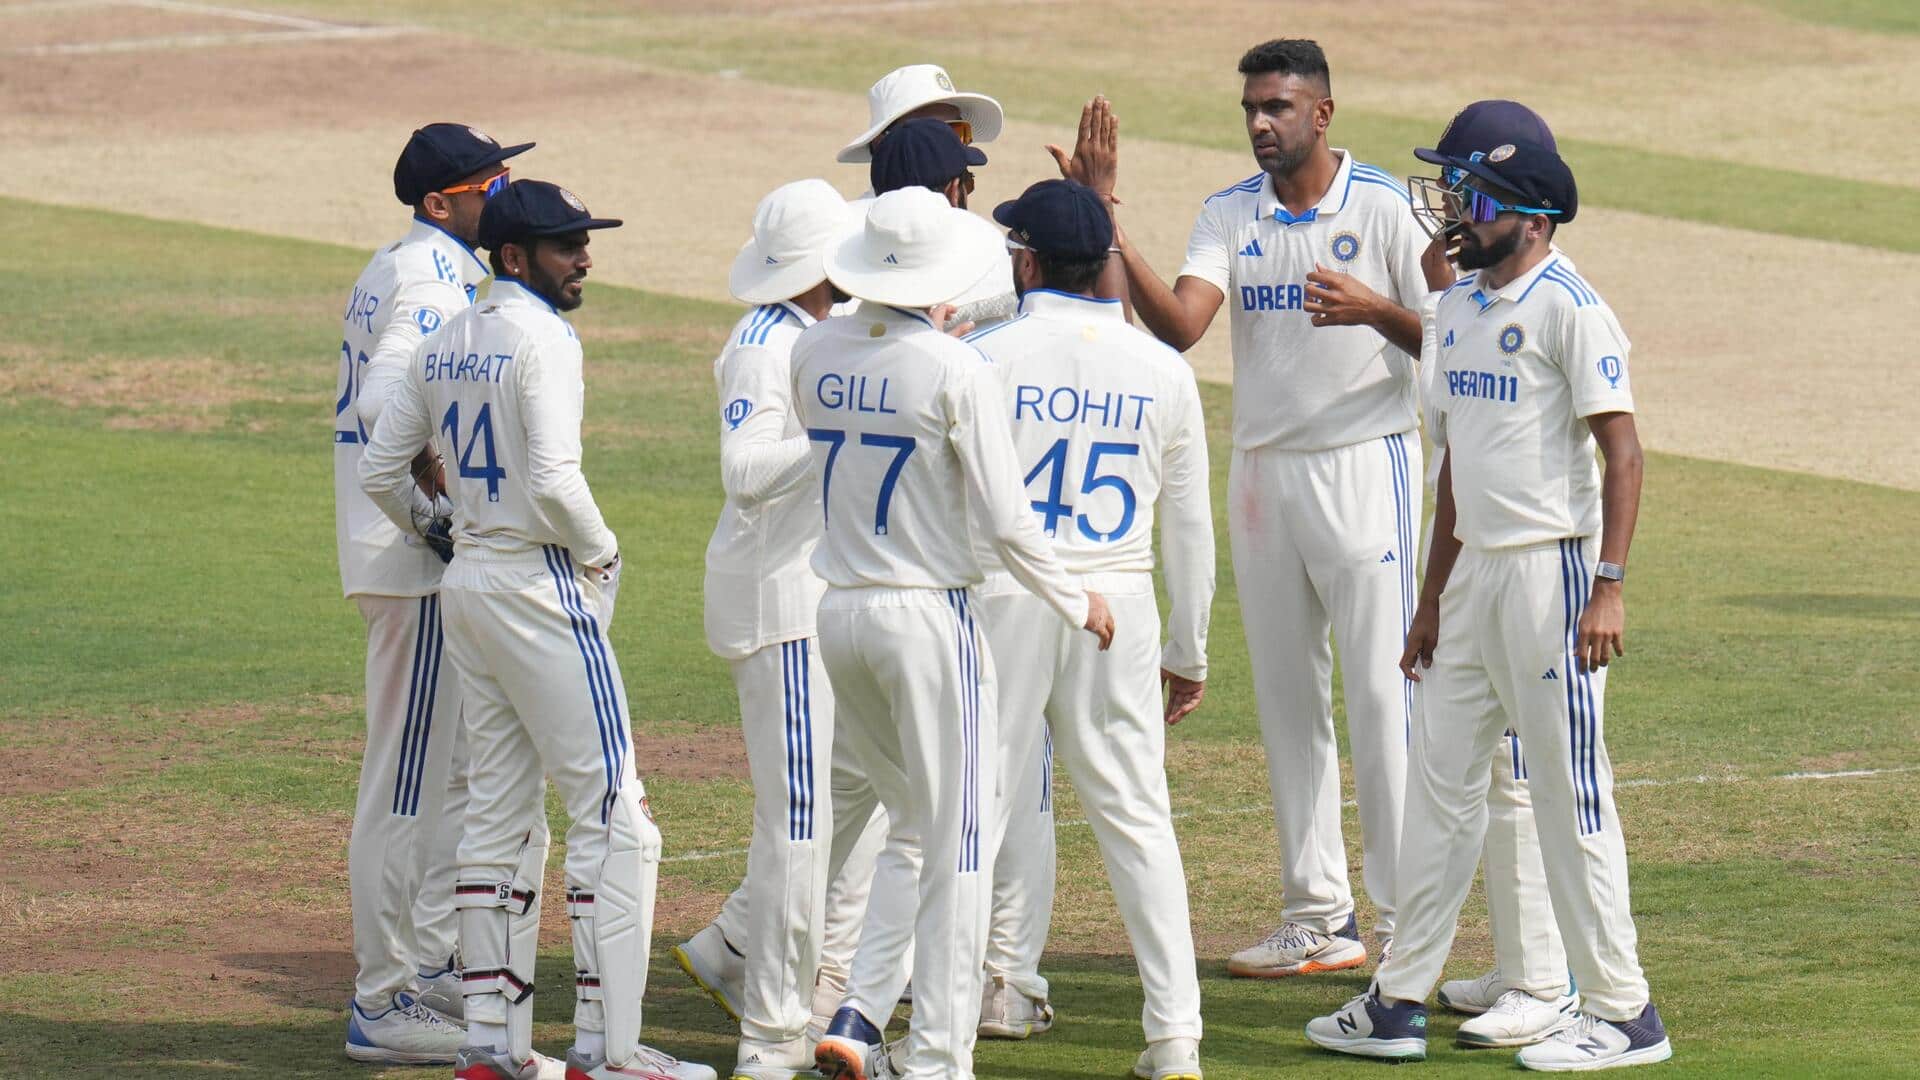 दूसरा टेस्ट: भारत ने इंग्लैंड के खिलाफ टॉस जीतकर चुनी बल्लेबाजी, रजत पाटीदार को मिला मौका 